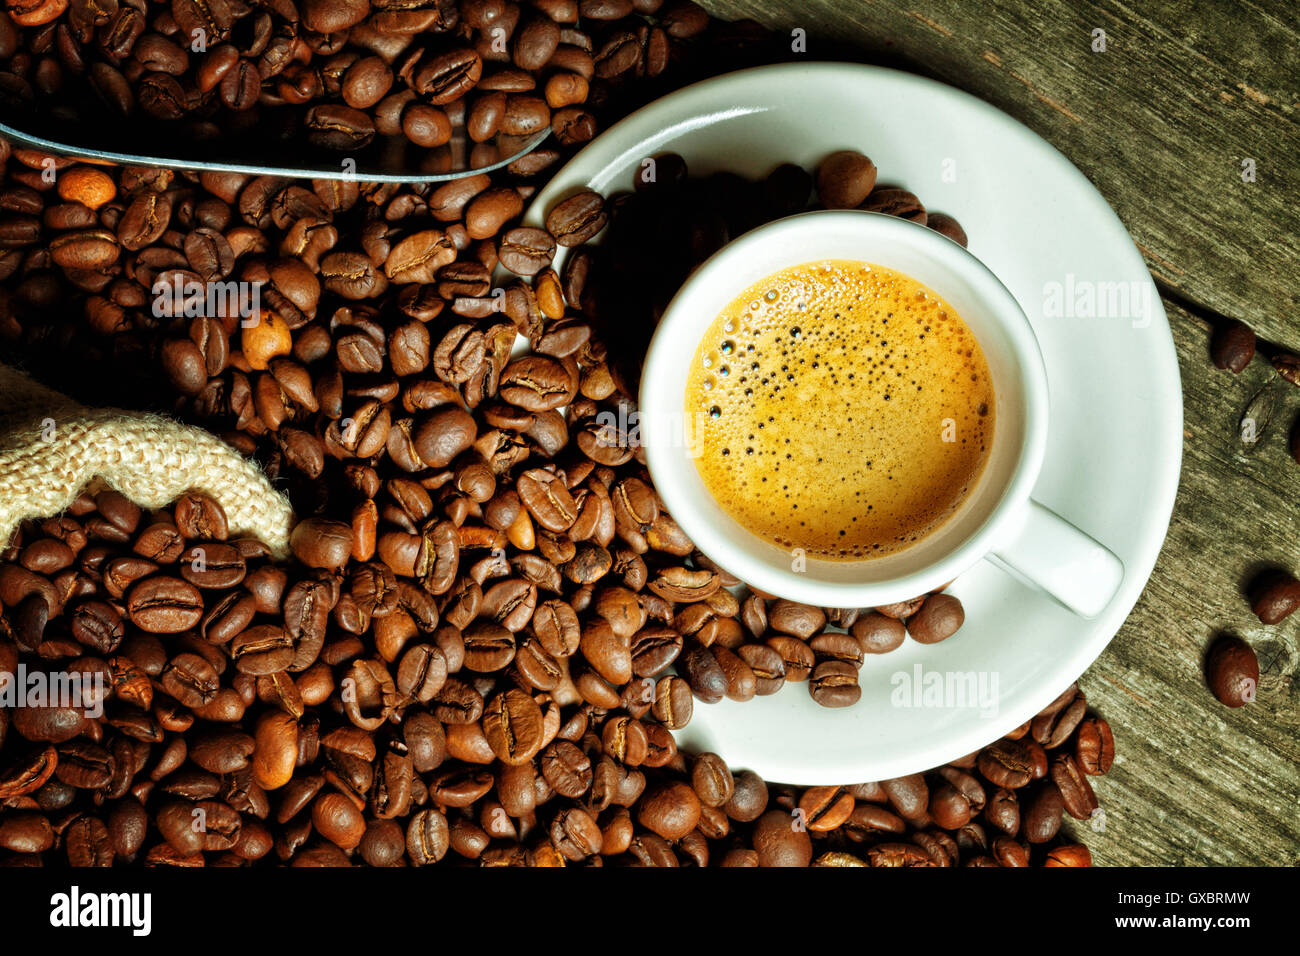 real espresso and coffee grain Stock Photo